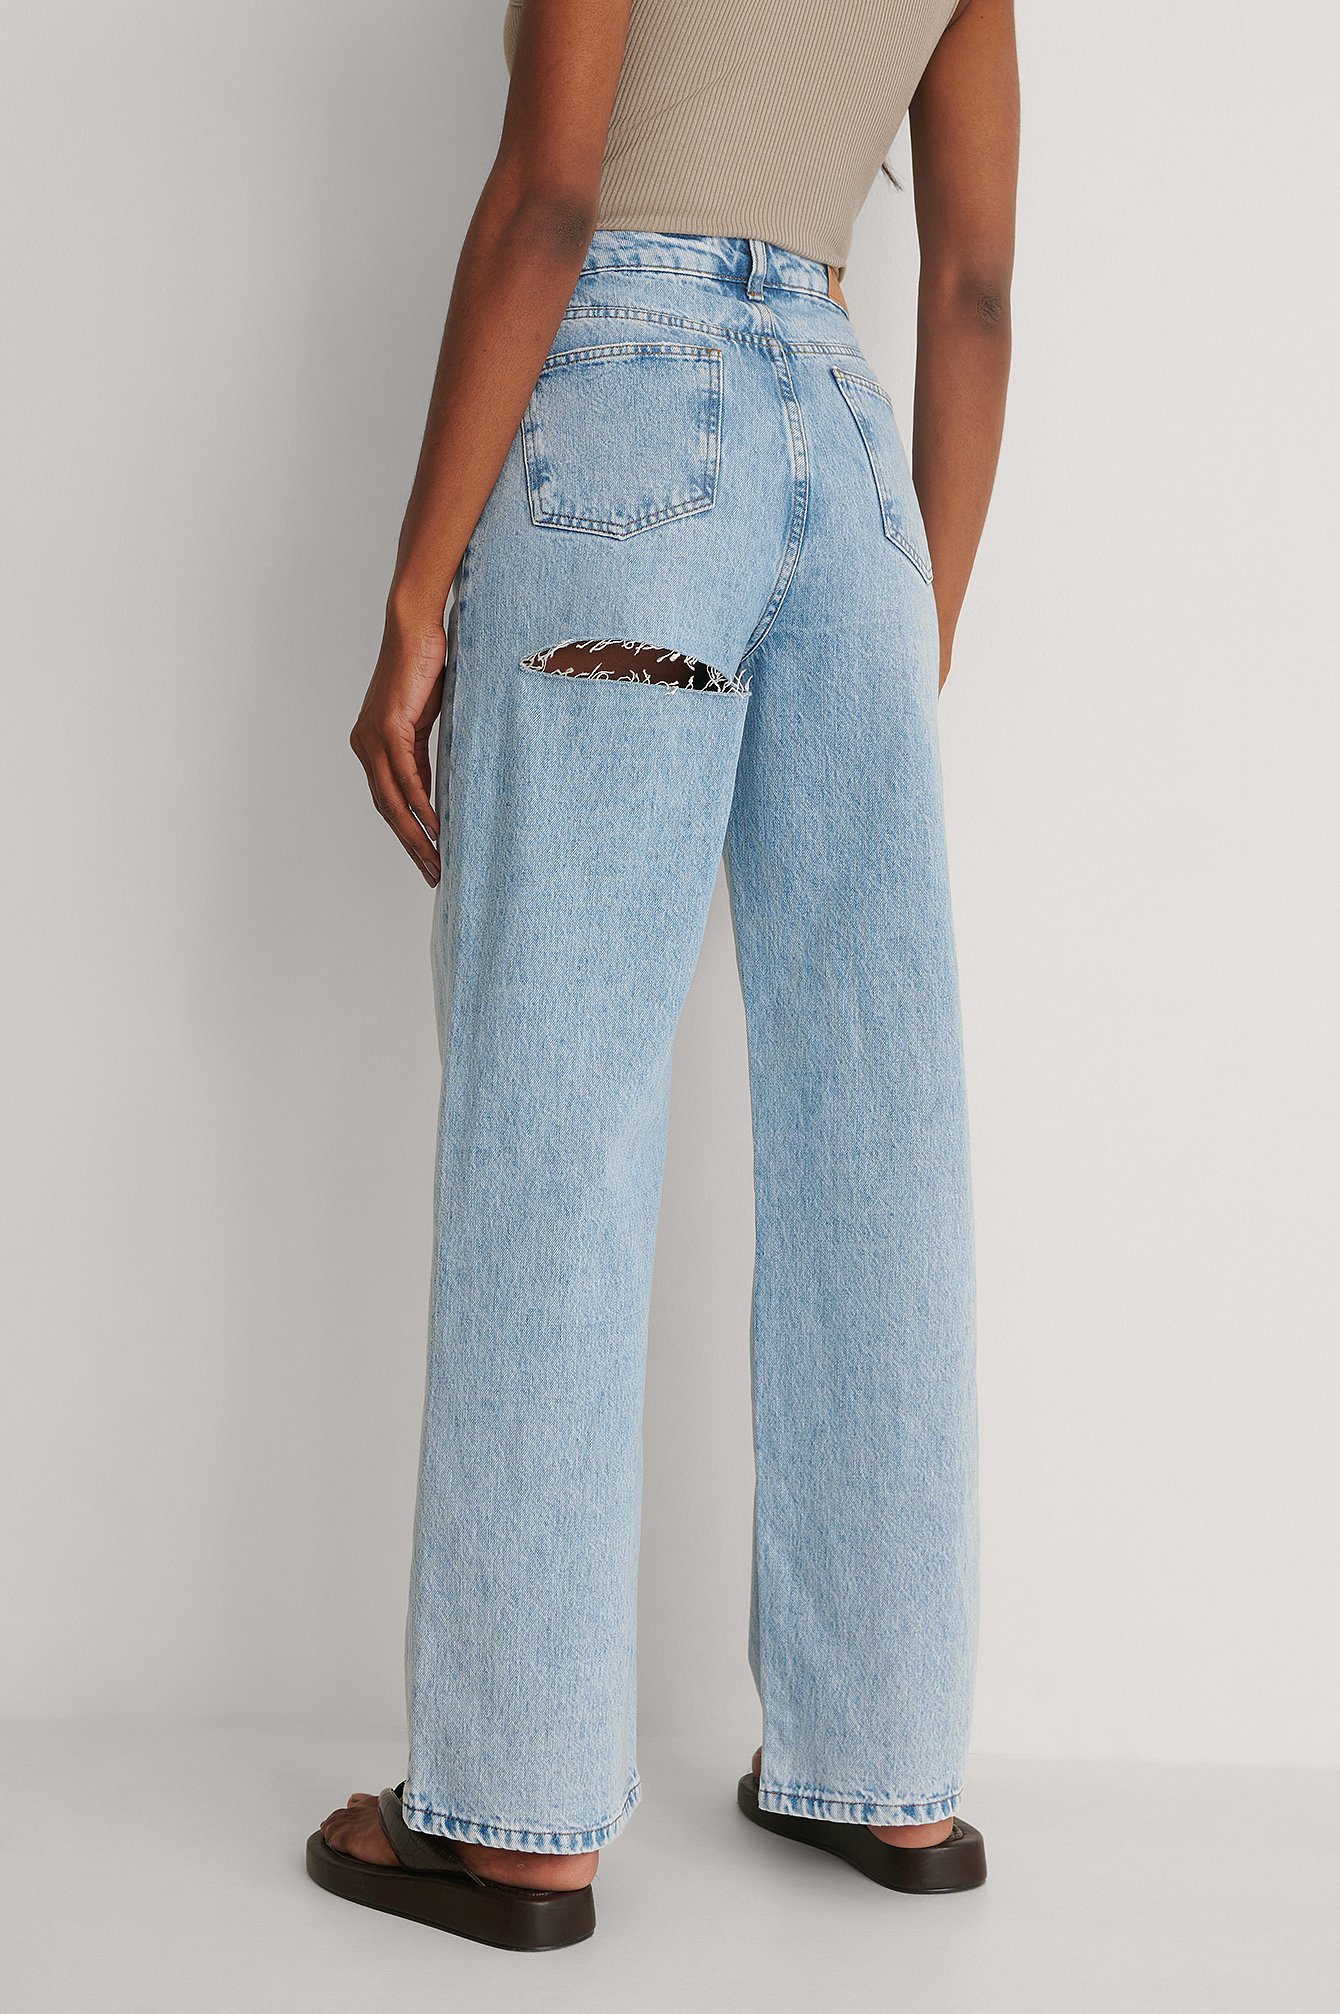 Light Blue Jeans Mit Hoher Taille, Weiten Beinen Und Schnitt An Der Hinterseite